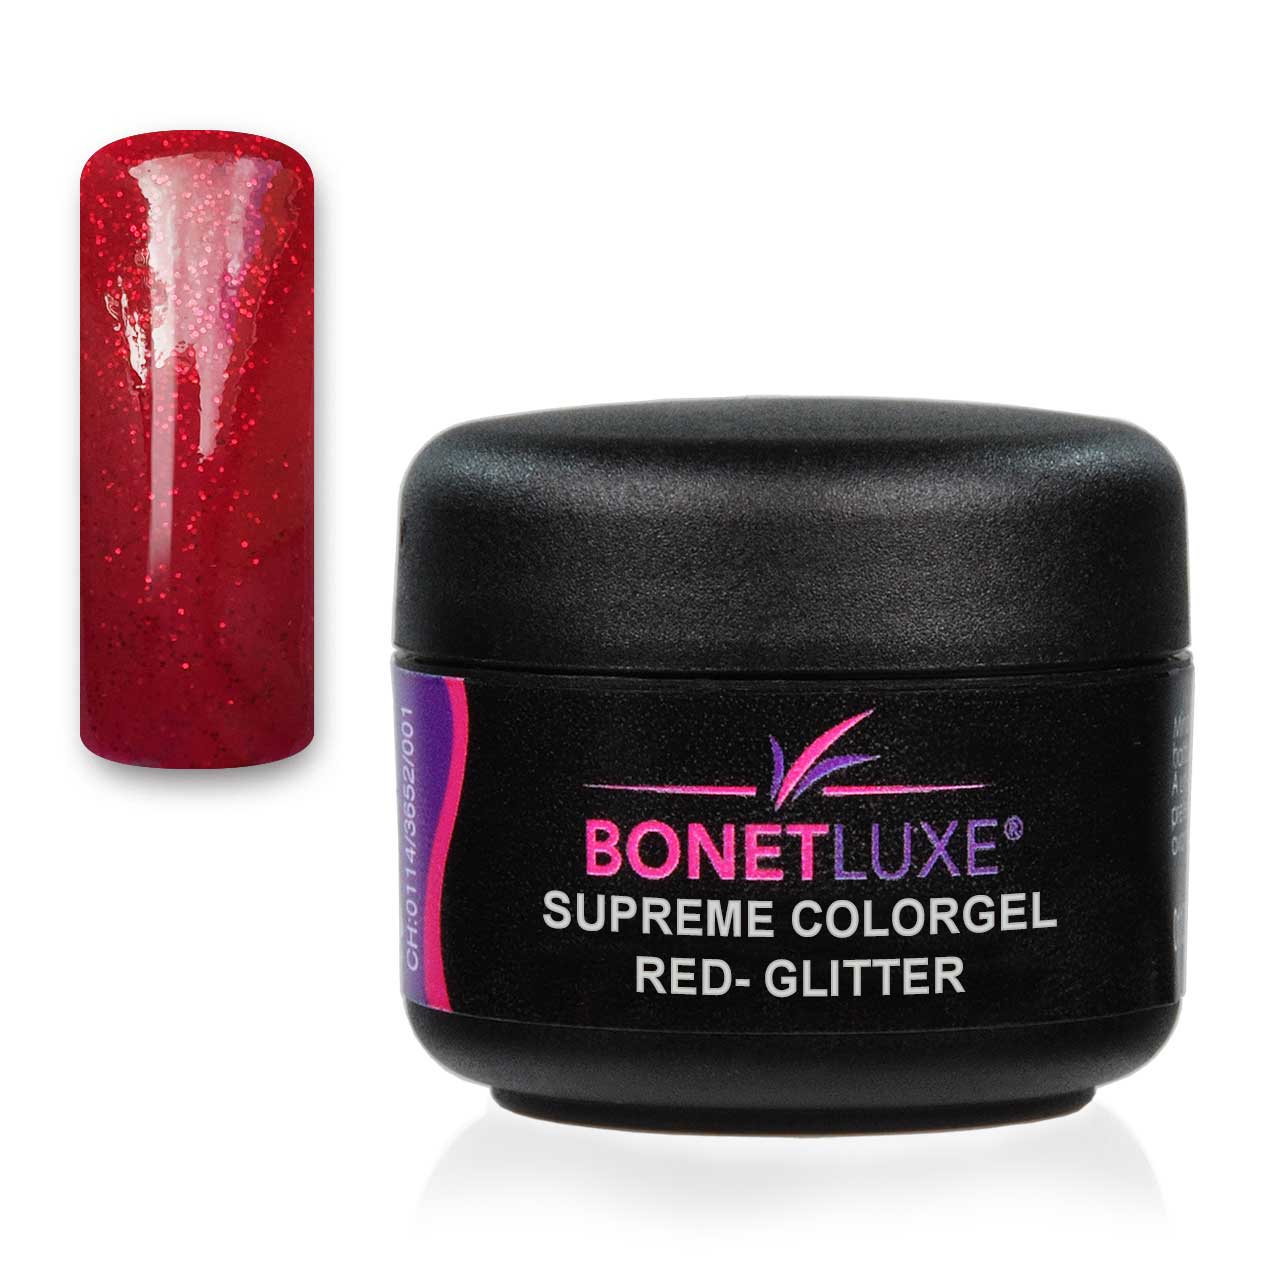 Supreme Colorgel Red-Glitter